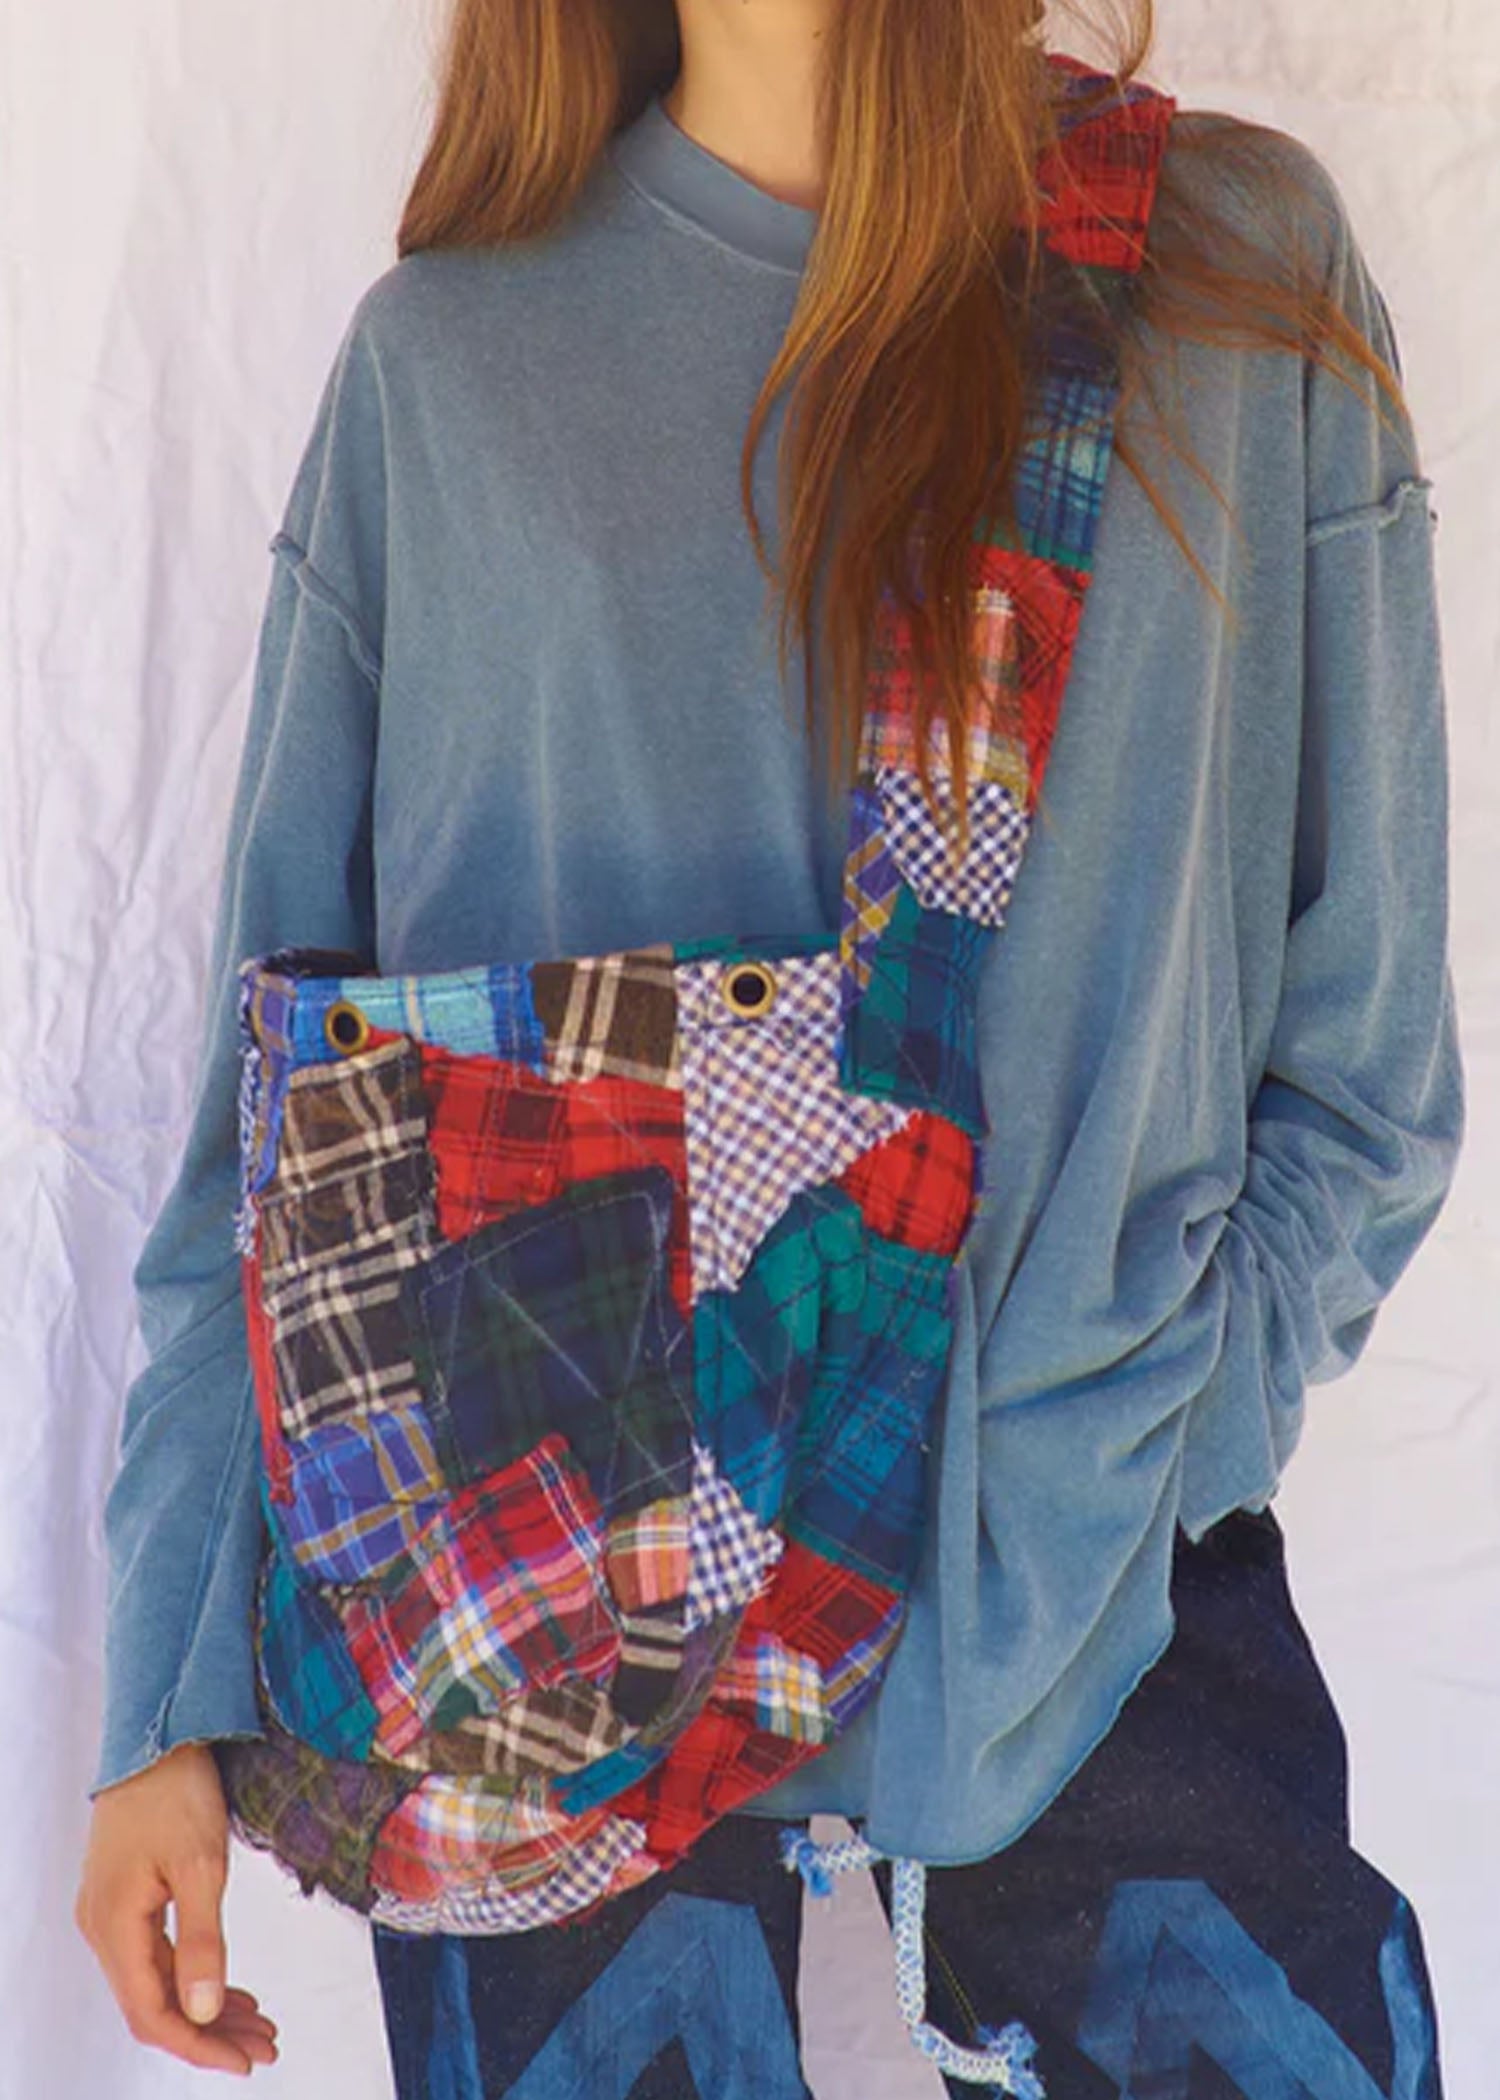 Dr-Collectors-Messenger-Bag-Recycled-Vintage-US-Flannel